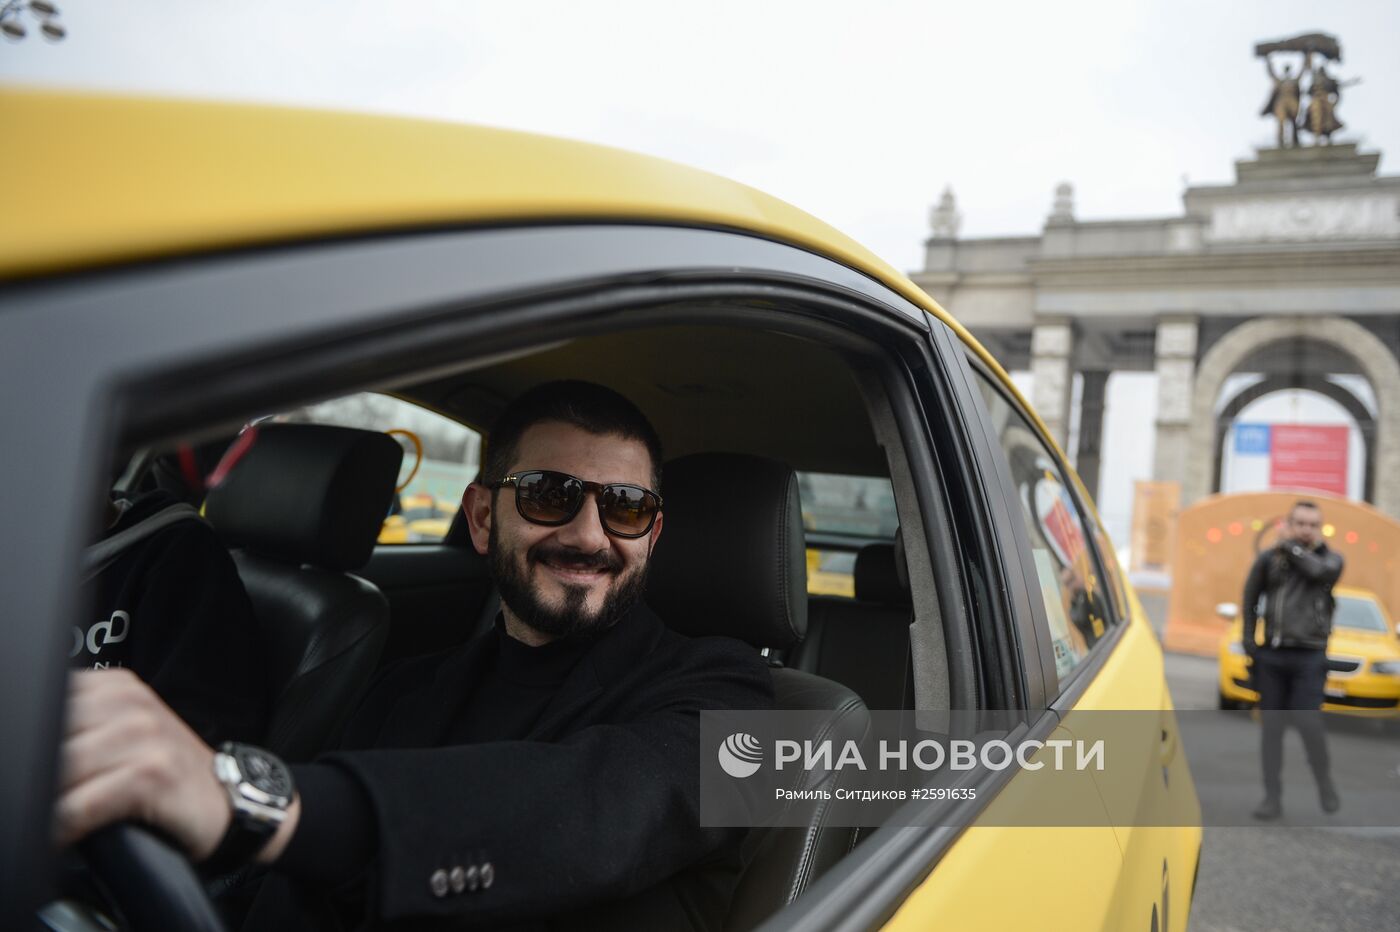 Благотворительная акция в рамках праздника "День московского такси"